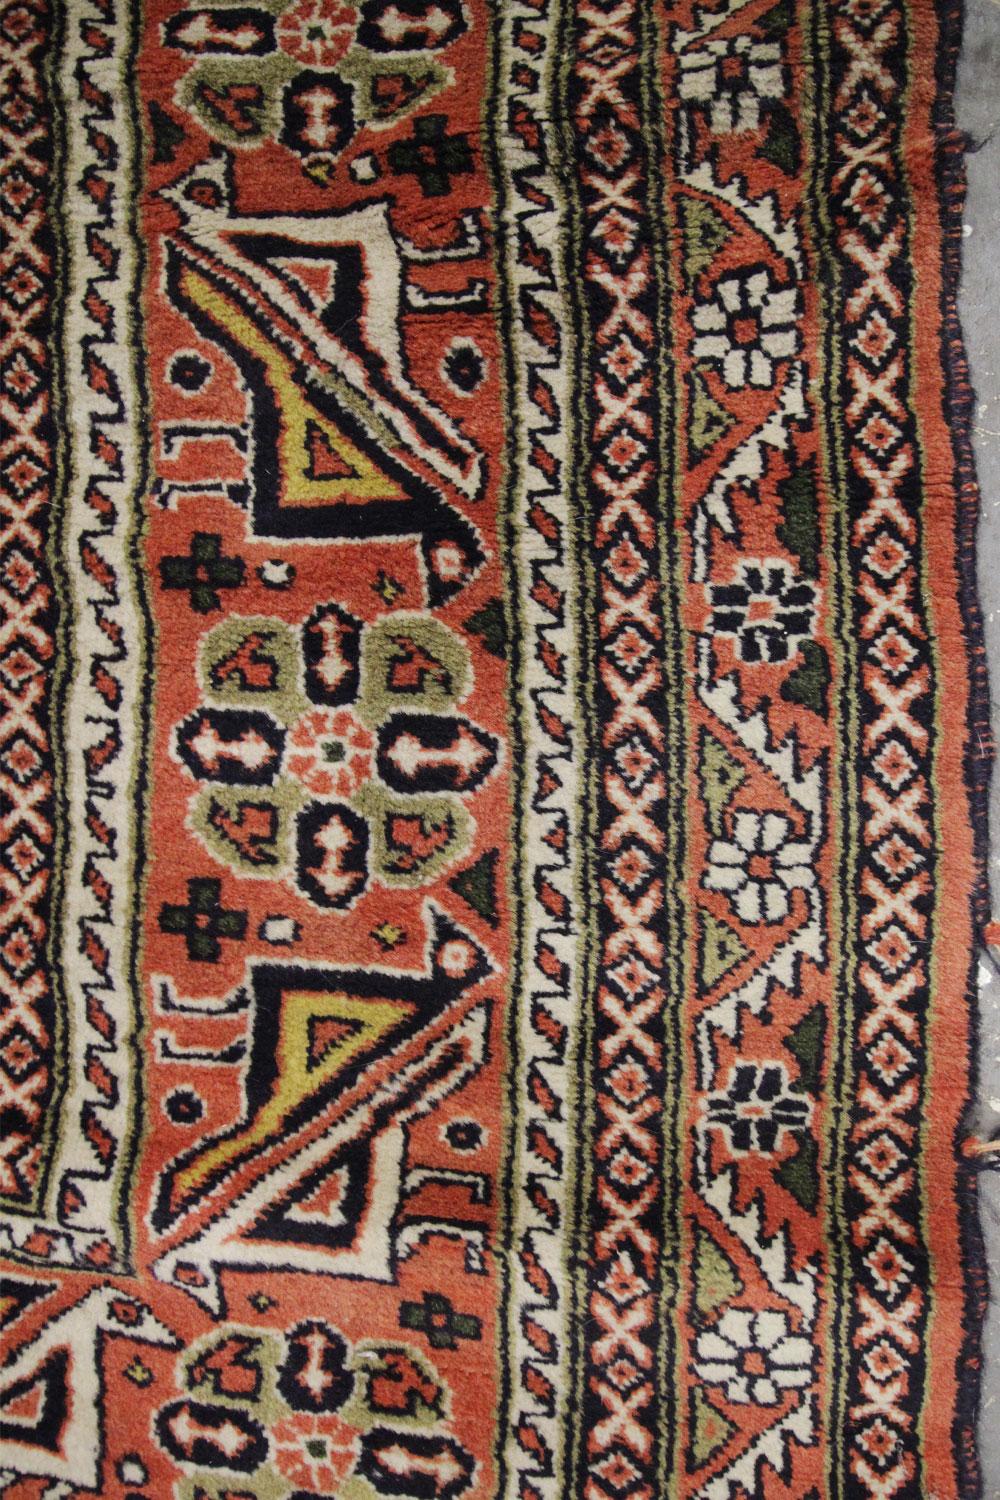 Afghan Grand tapis traditionnel afghan tribal, tapis en laine multicolore fait à la main en vente